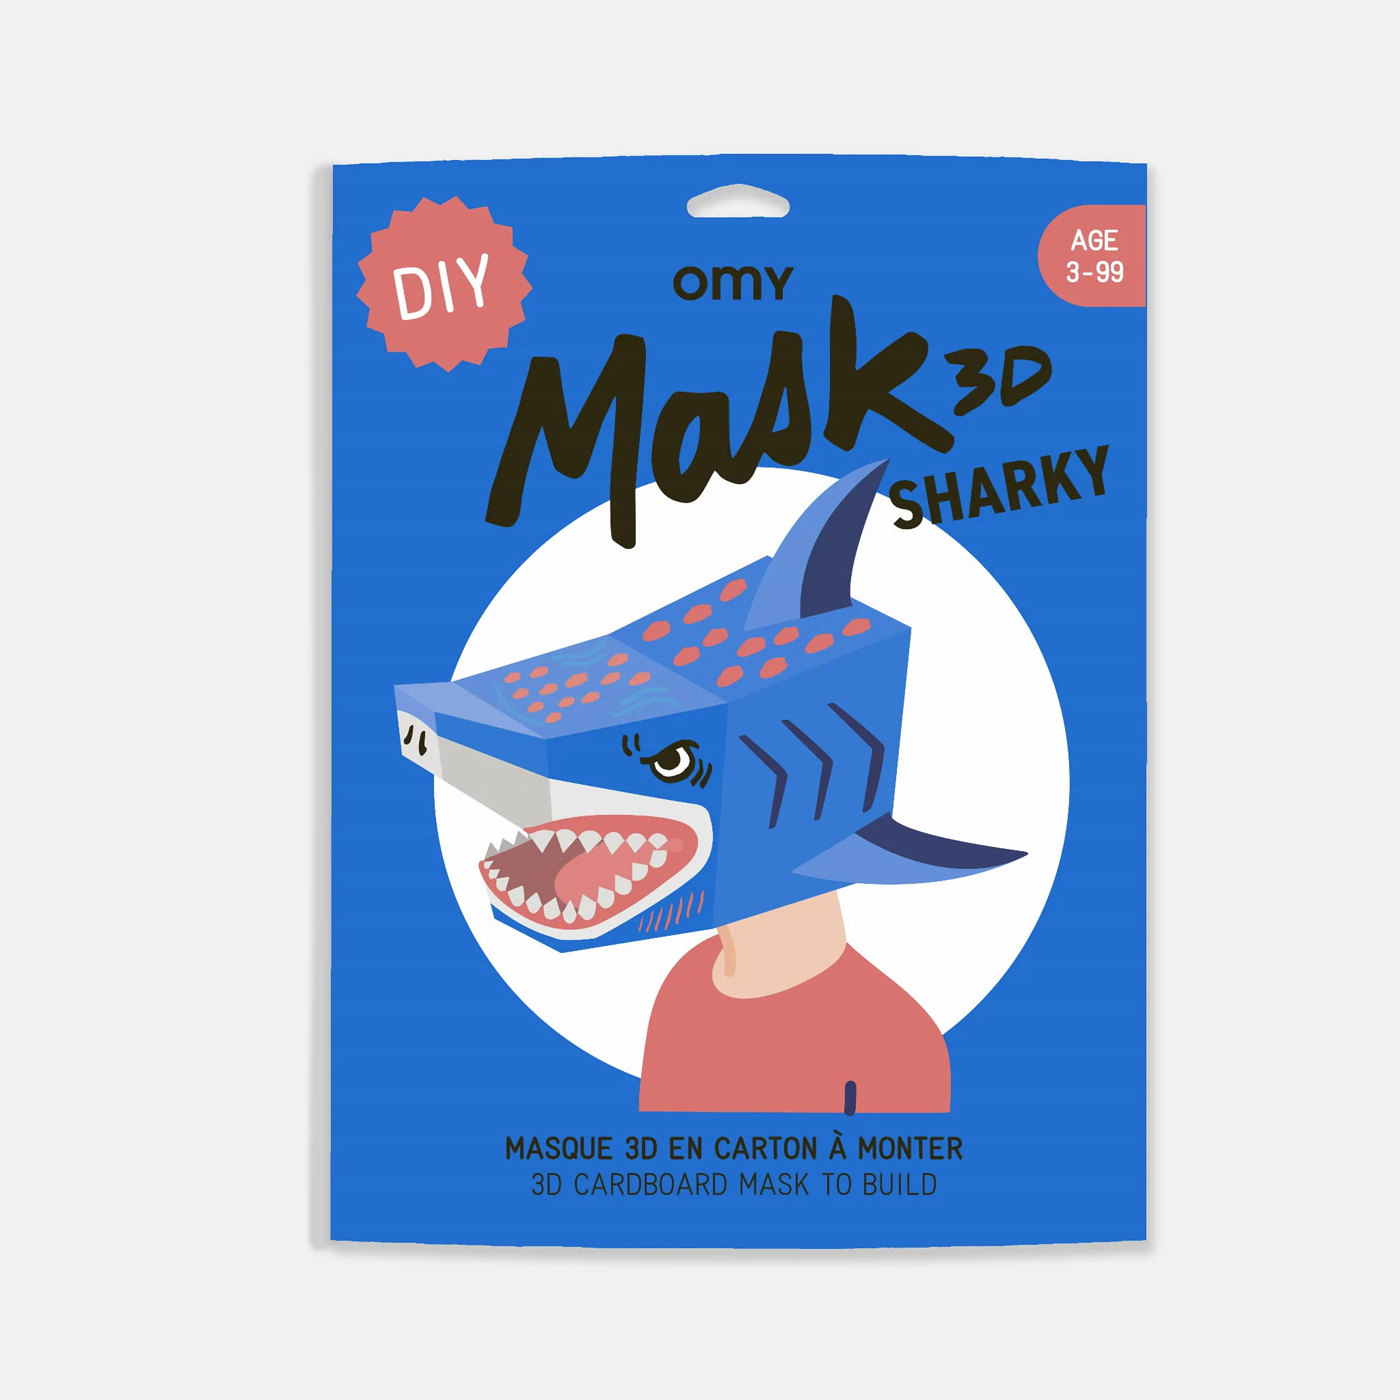 OMY Omy 3D Mask Sharky